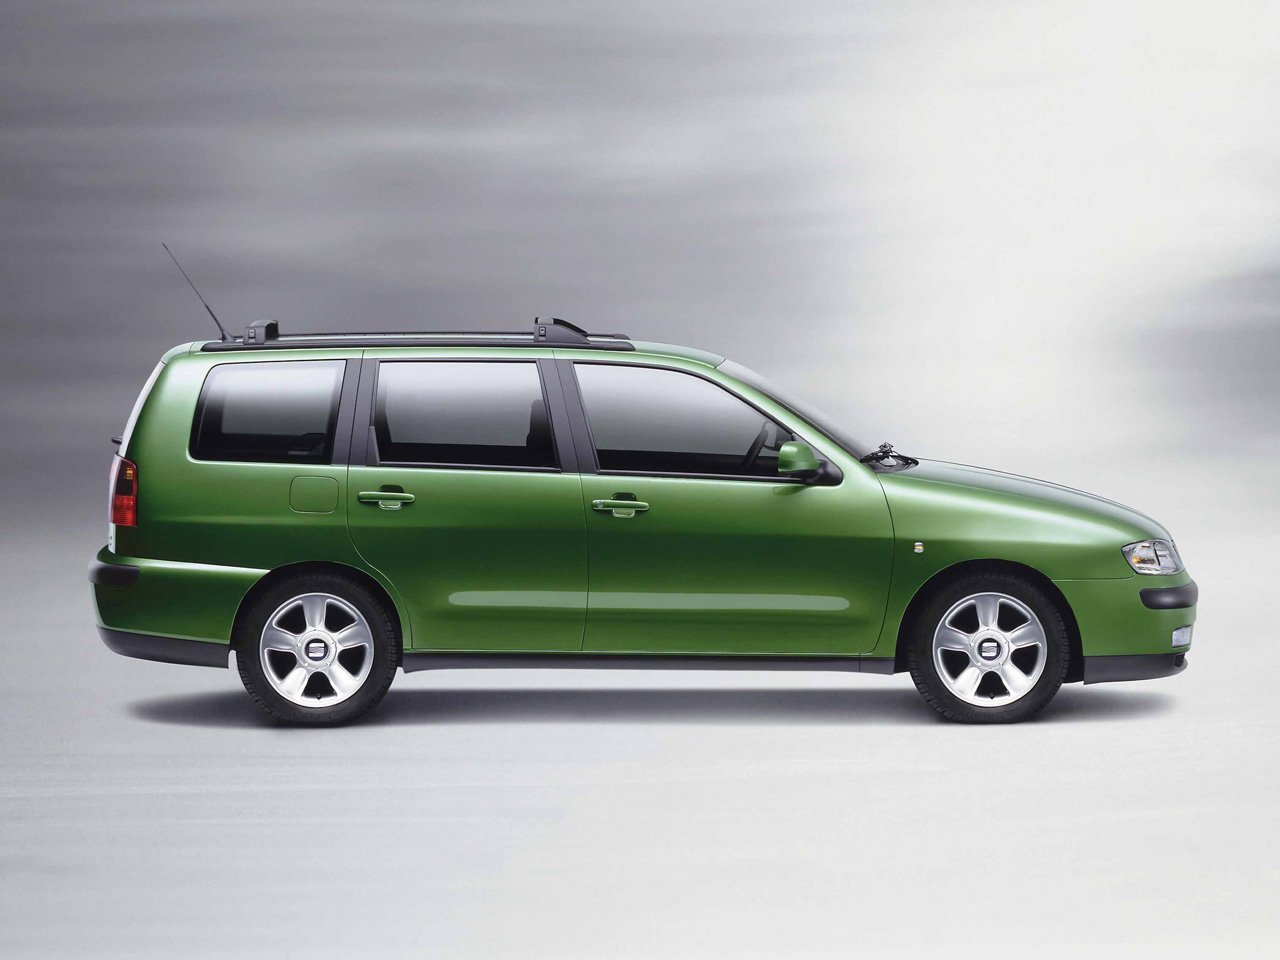 универсал Vario SEAT Cordoba 1999 - 2002г выпуска модификация 1.4 MT (60 л.с.)